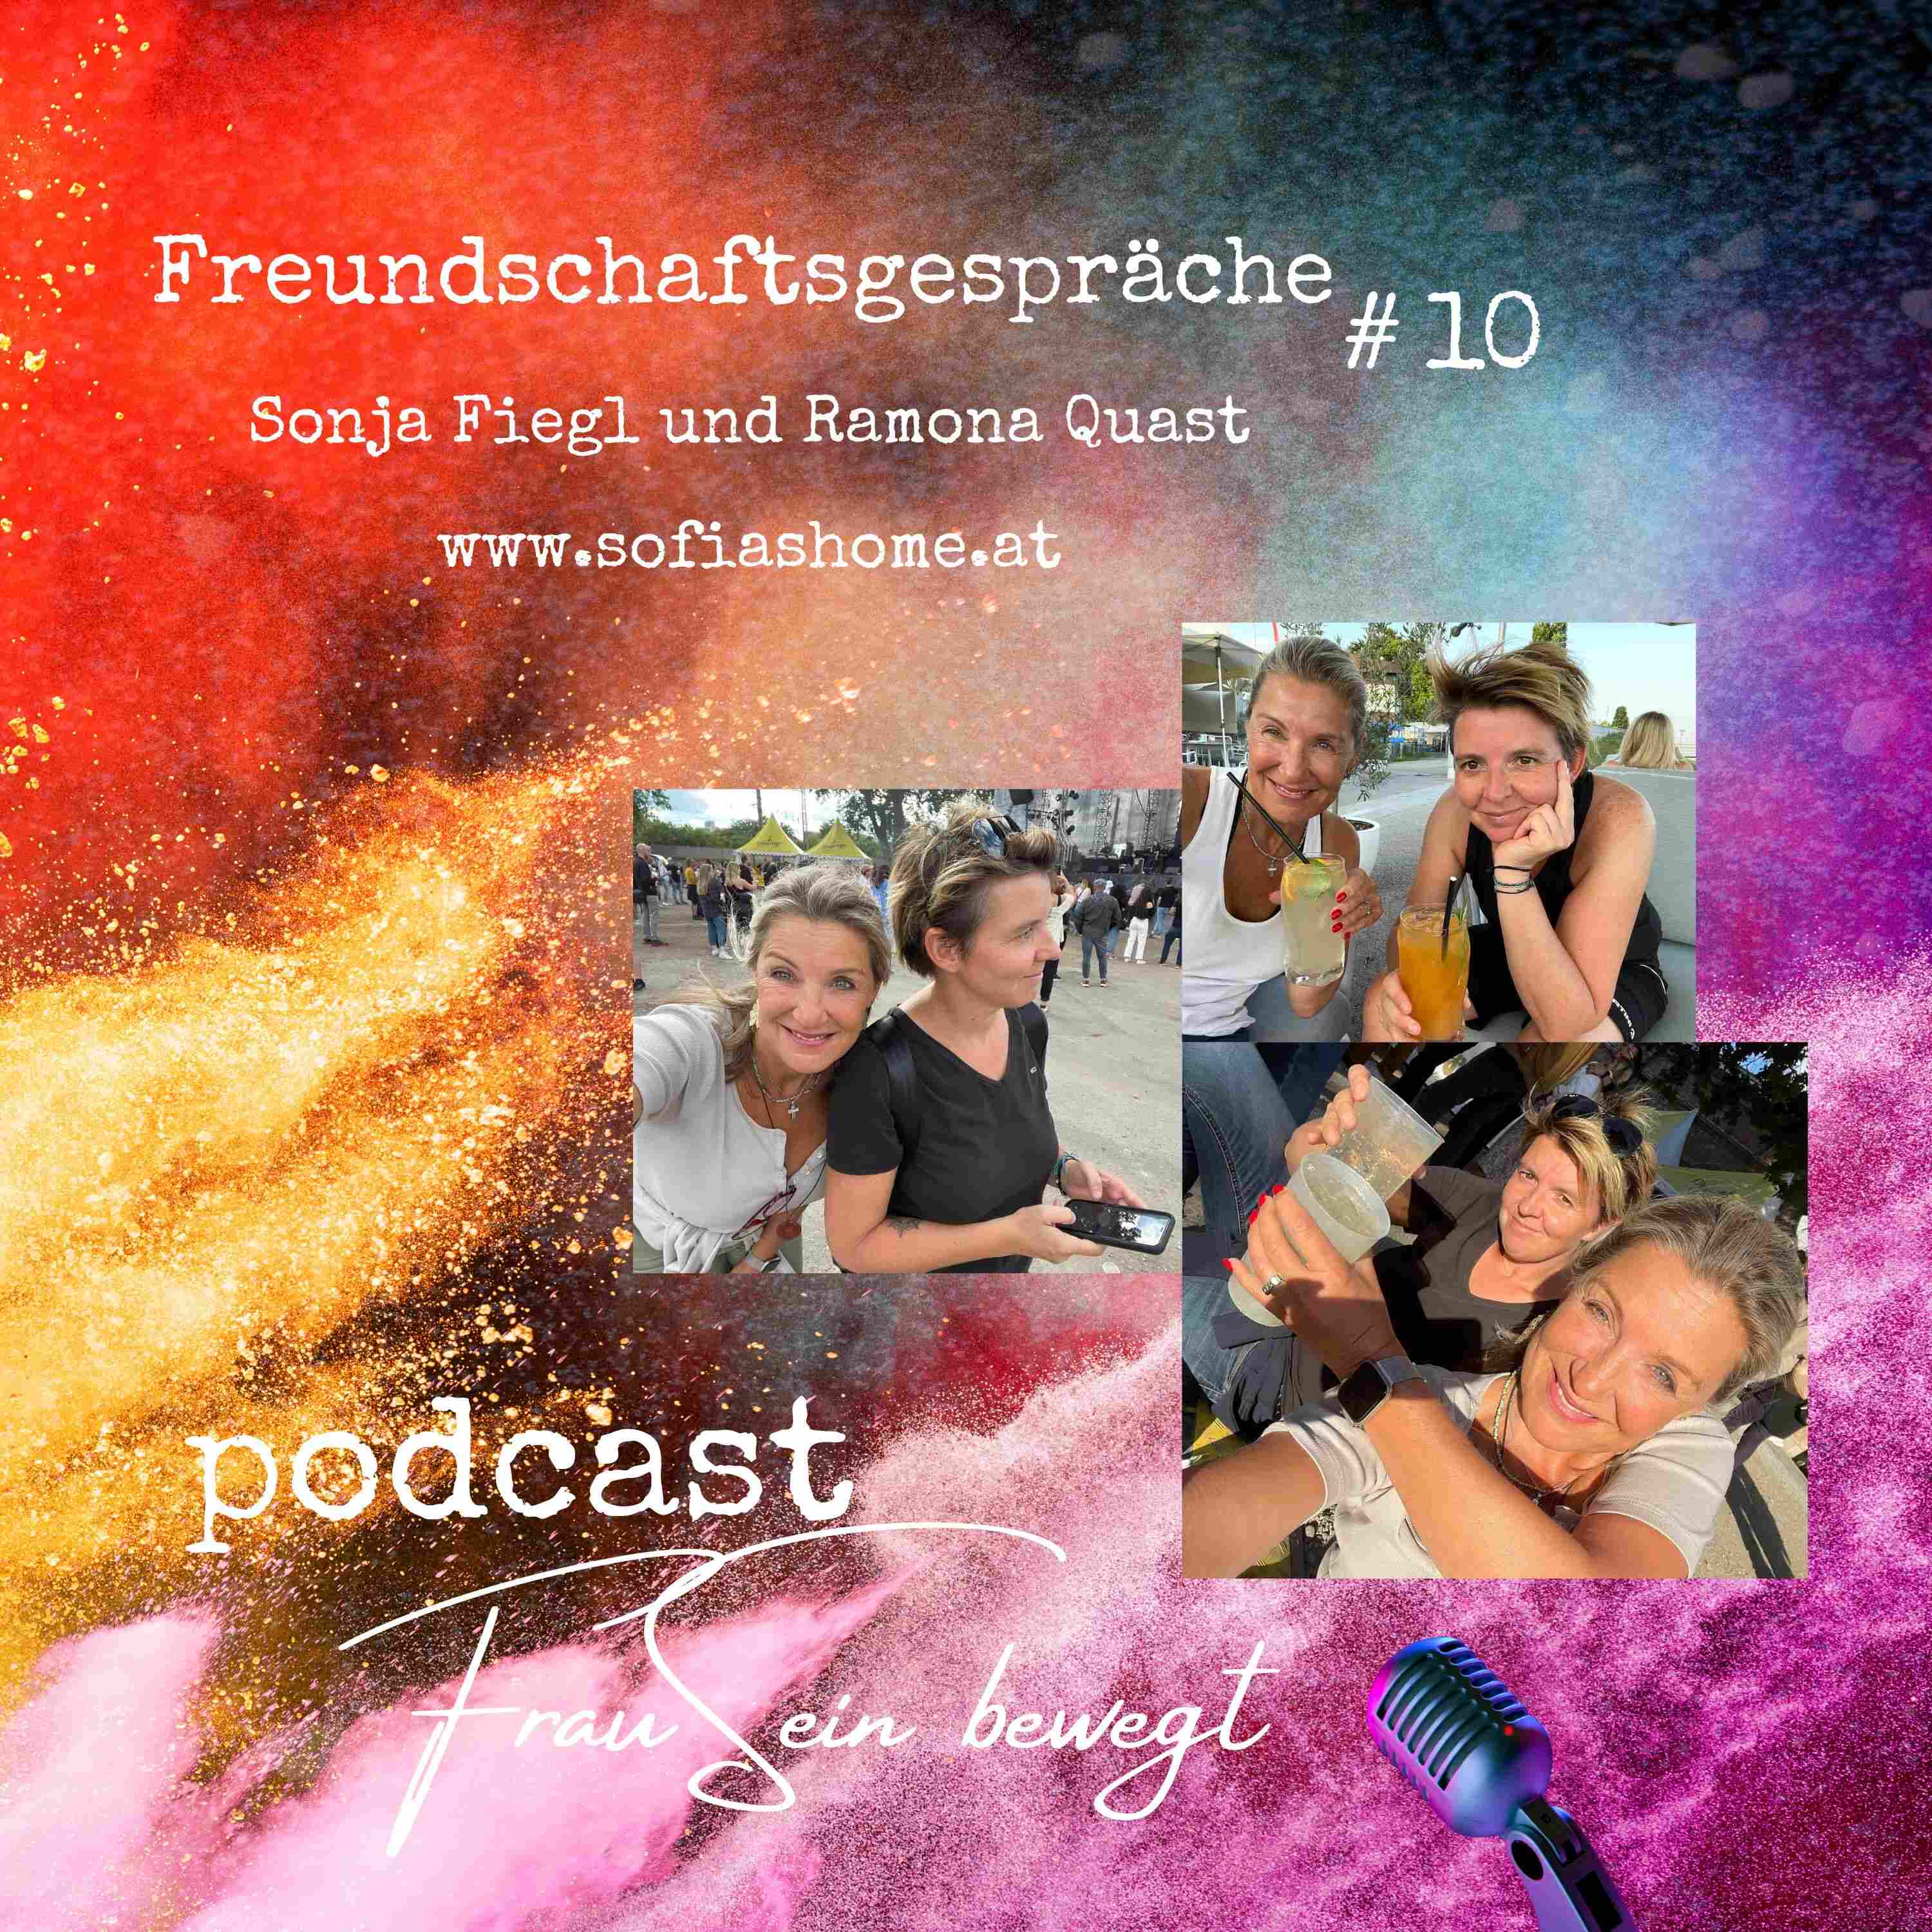 bewegt Podcast - FrauSein - mit Folge Freundschaftsgespräch Reise Quast Fiegl - Sonja Ramona Leben - 10 eine